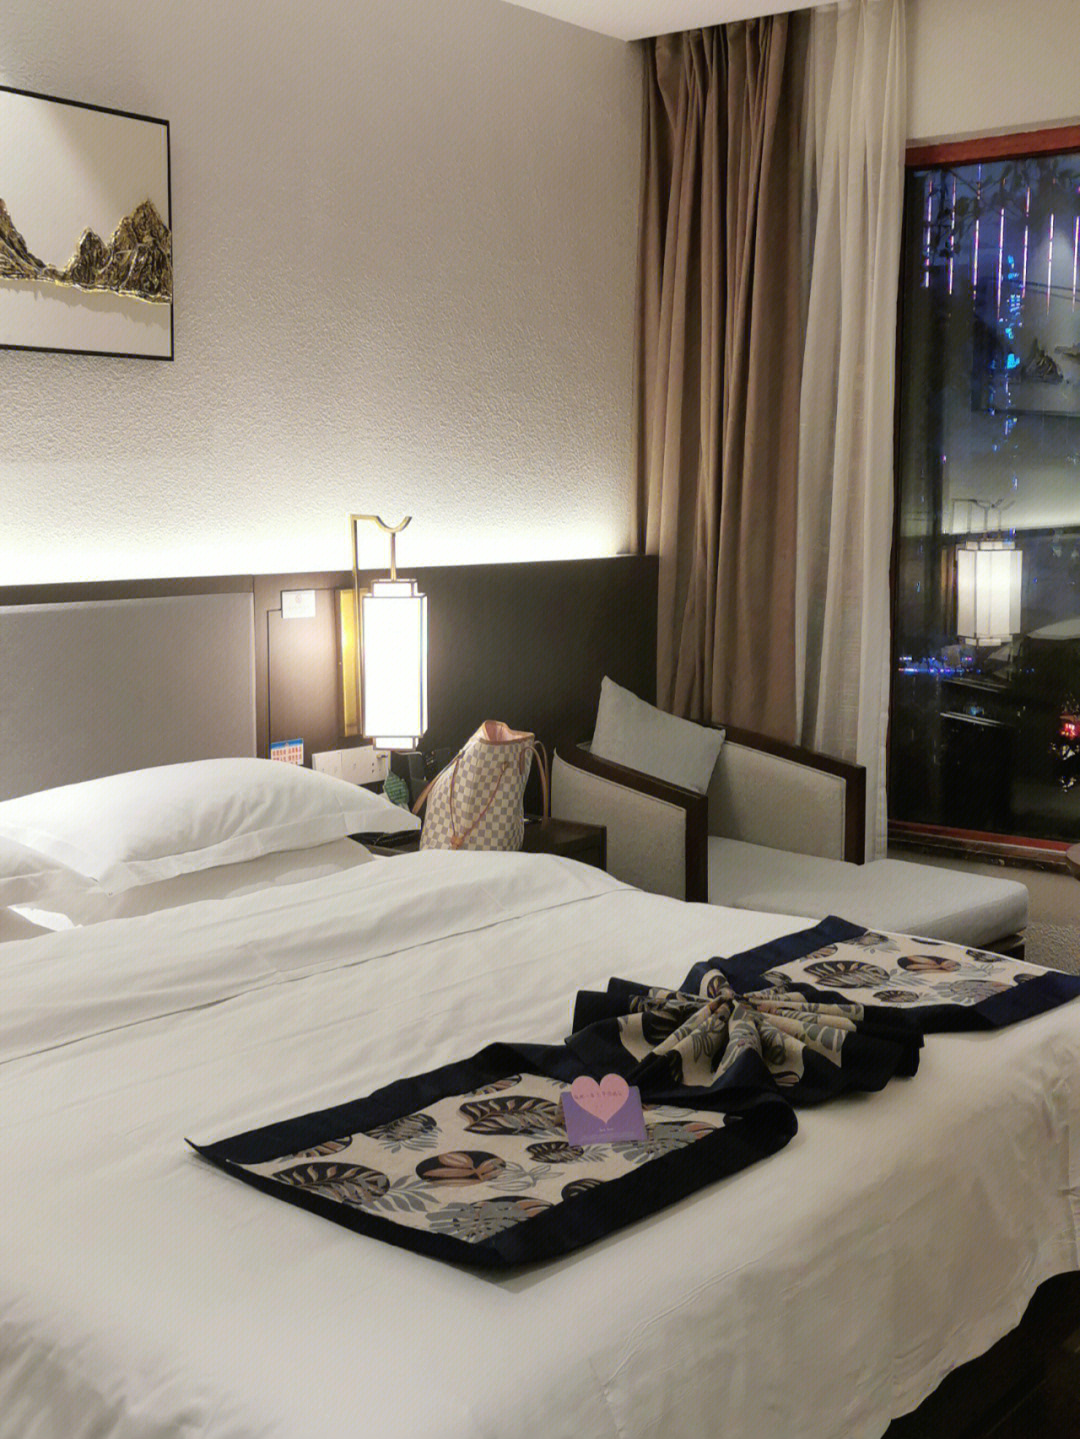 双胞小镇的词都不如面朝双子星酒店对面这是我在墨江住最舒适的酒店超